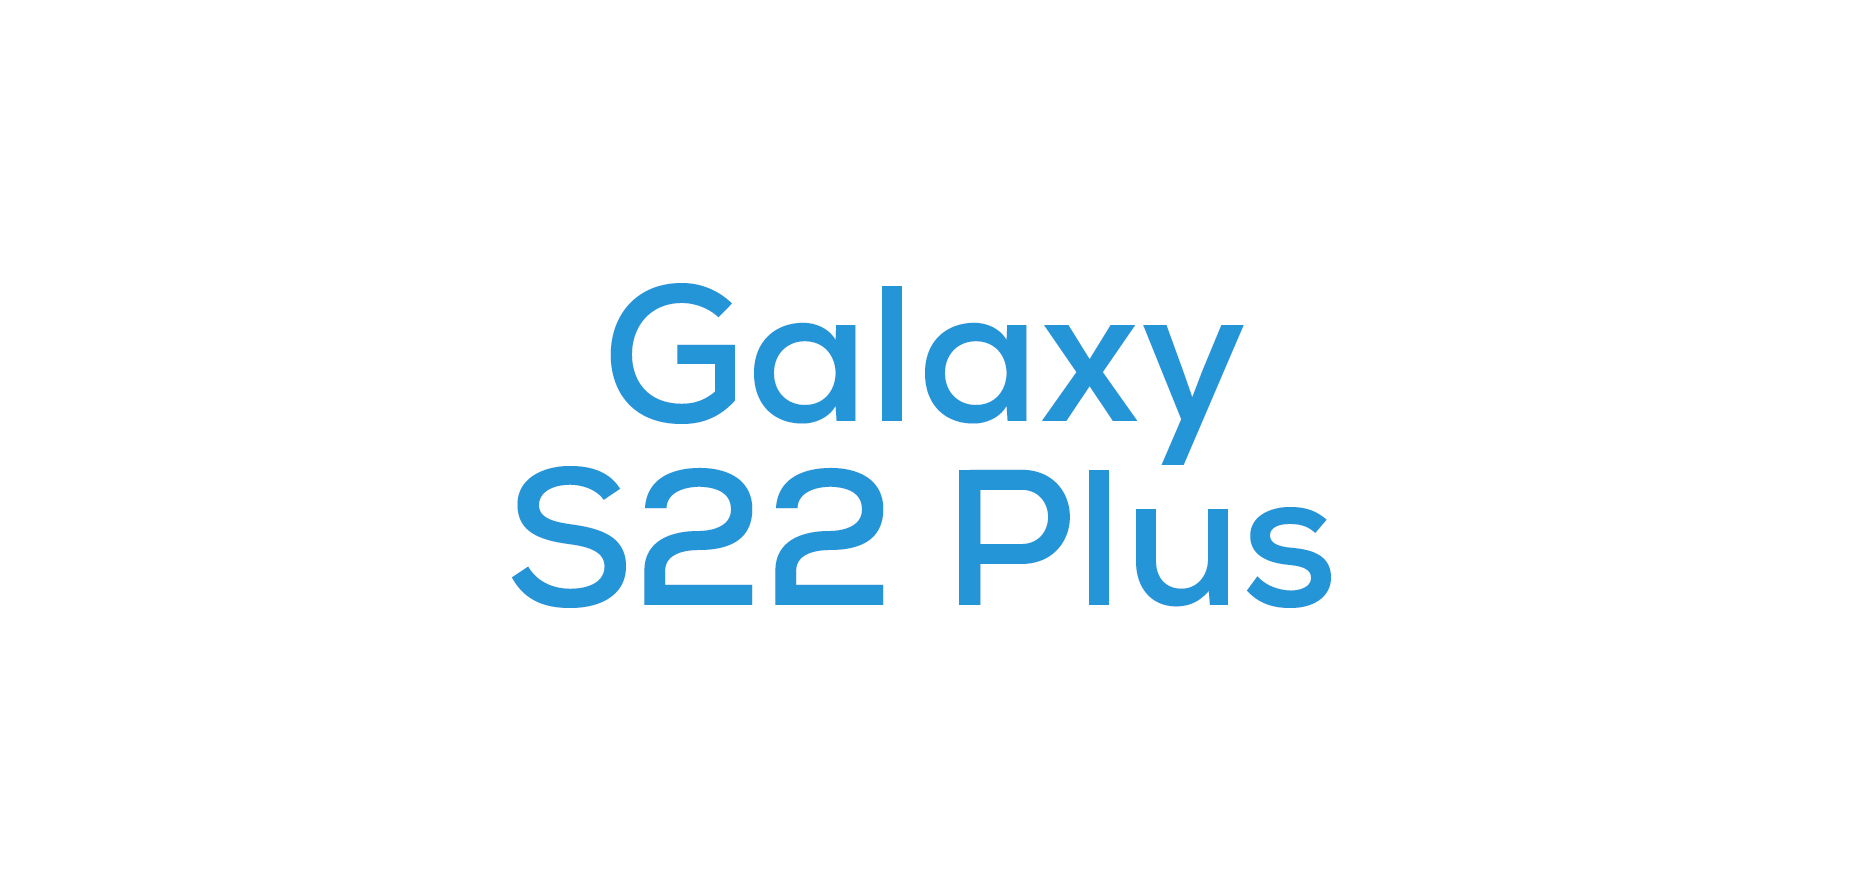 Galaxy S22 Plus